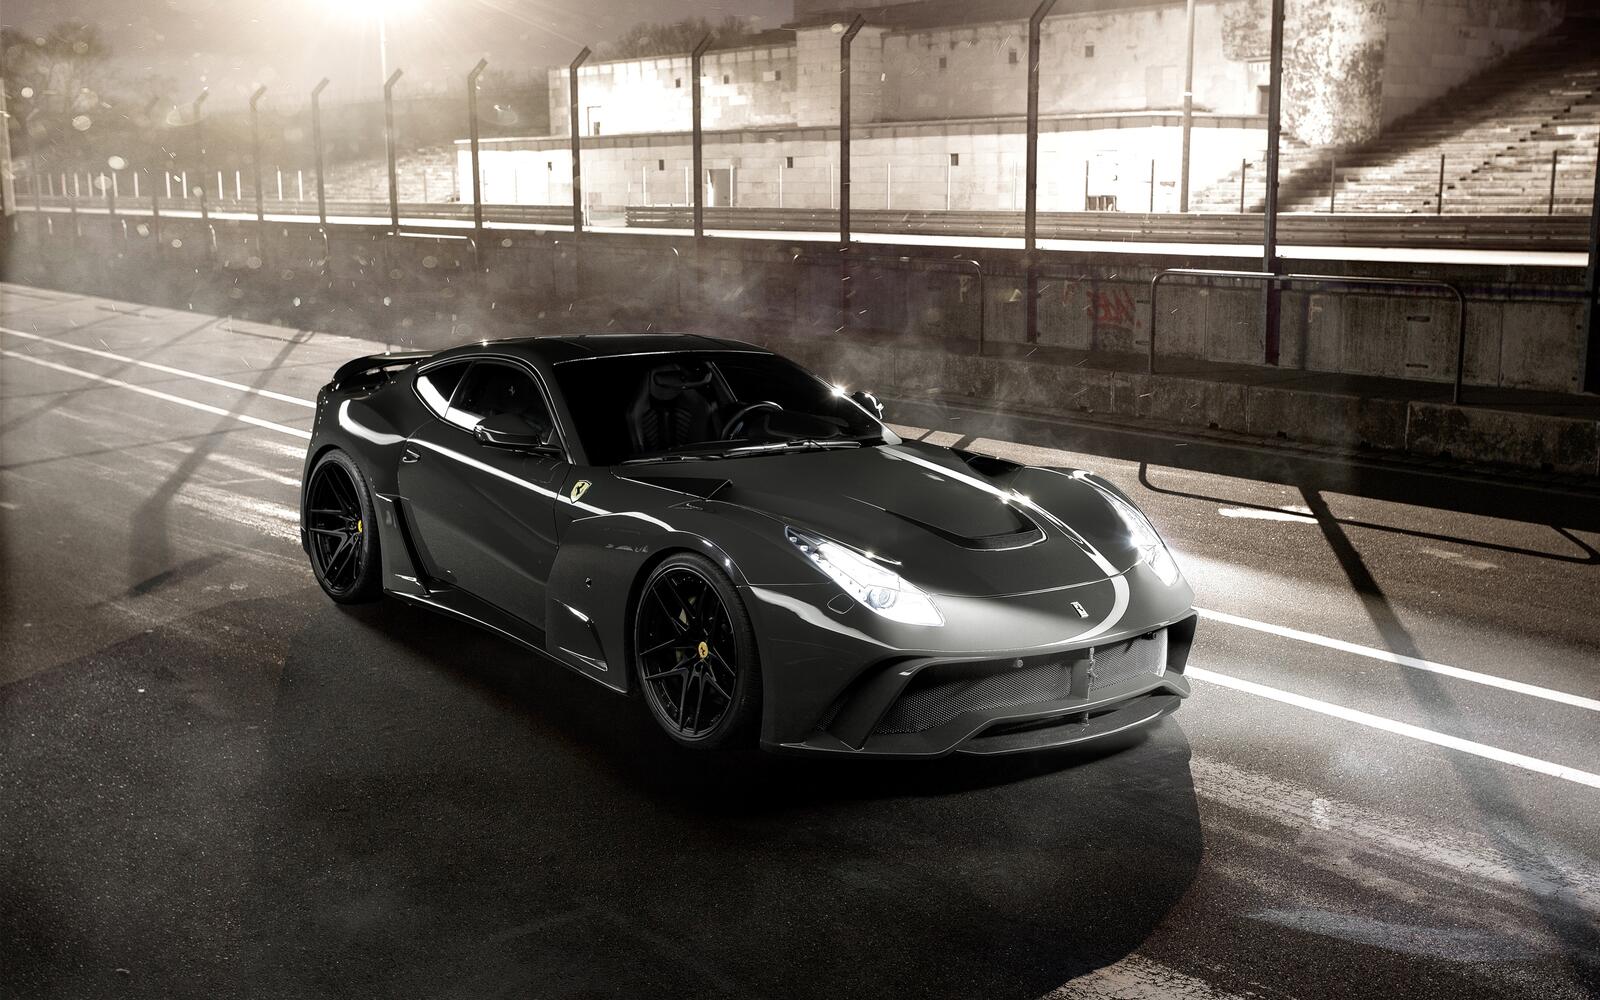 Бесплатное фото Ferrari f12 berlinetta серого цвета на спортивной трассе